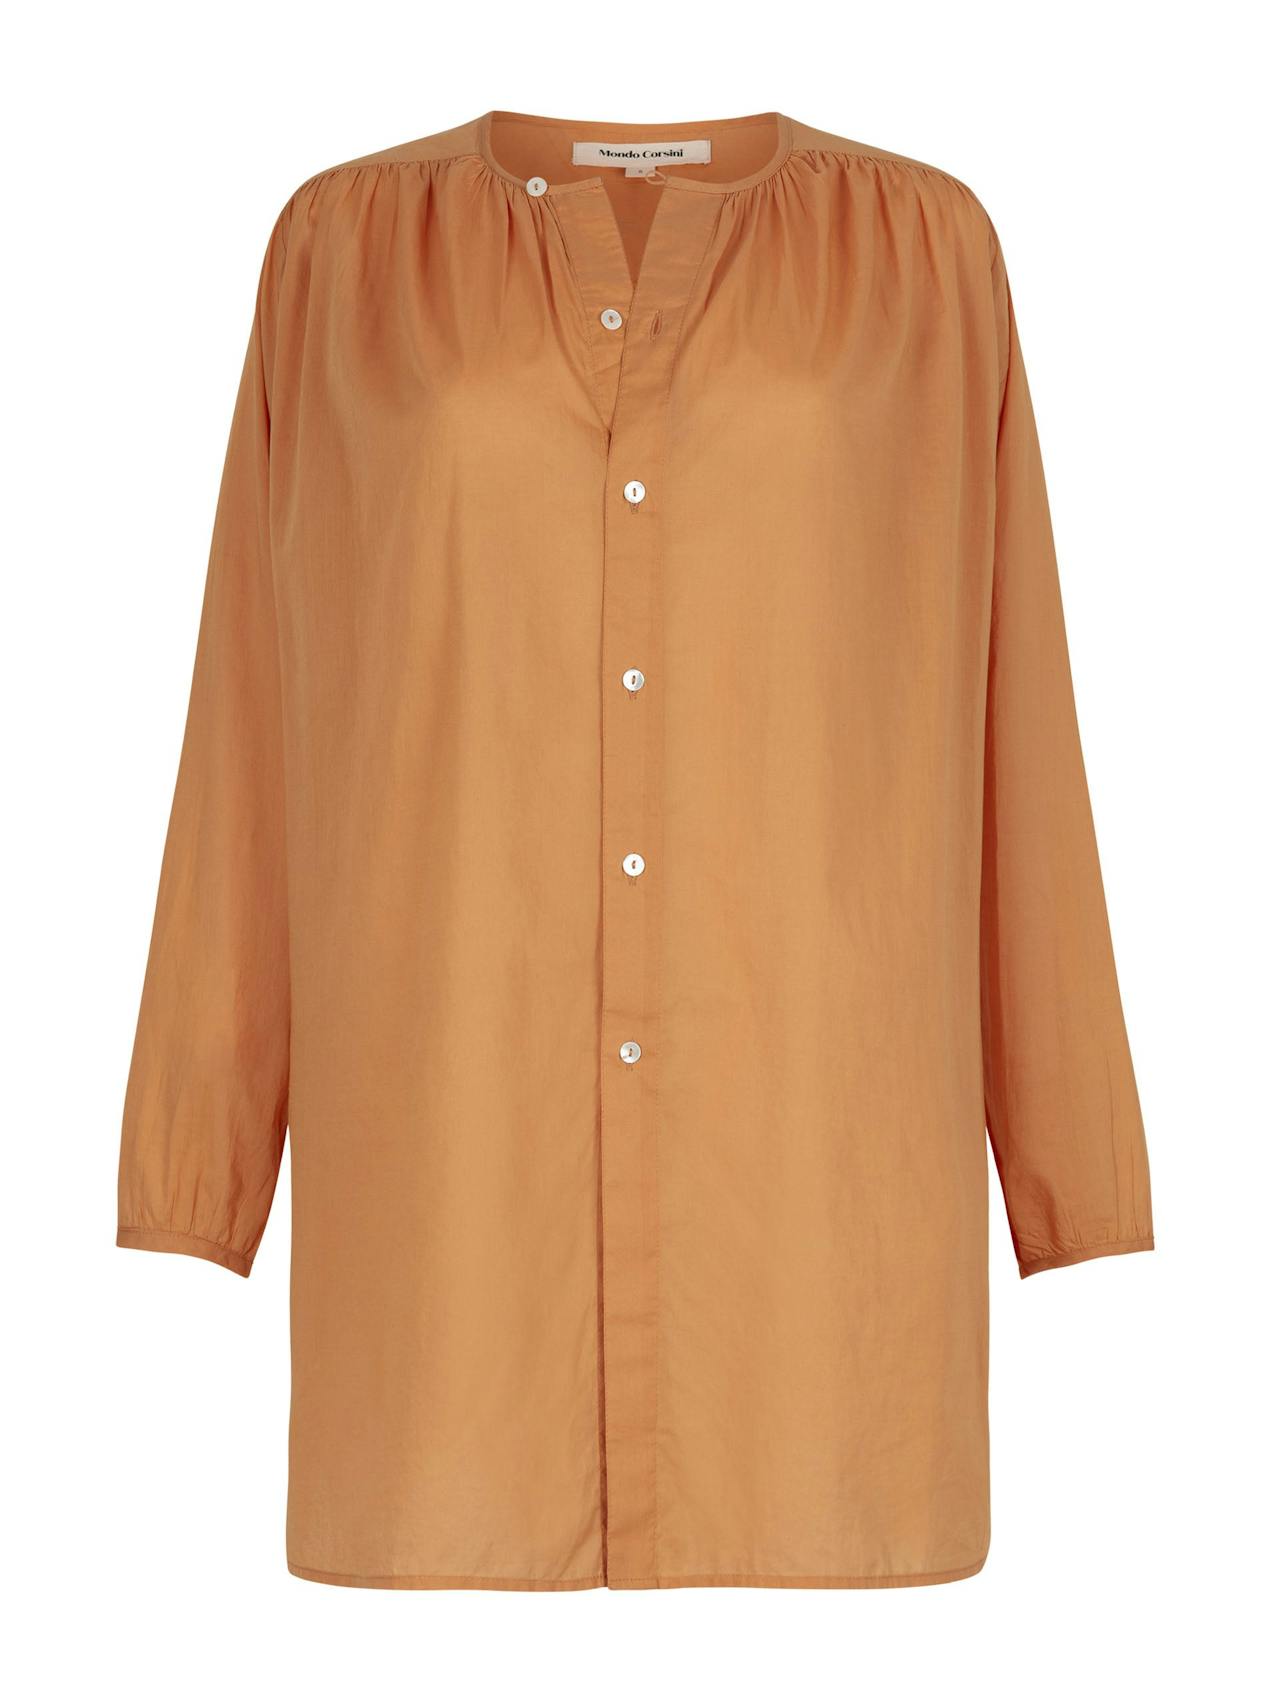 Gigi tangerine cotton blouse